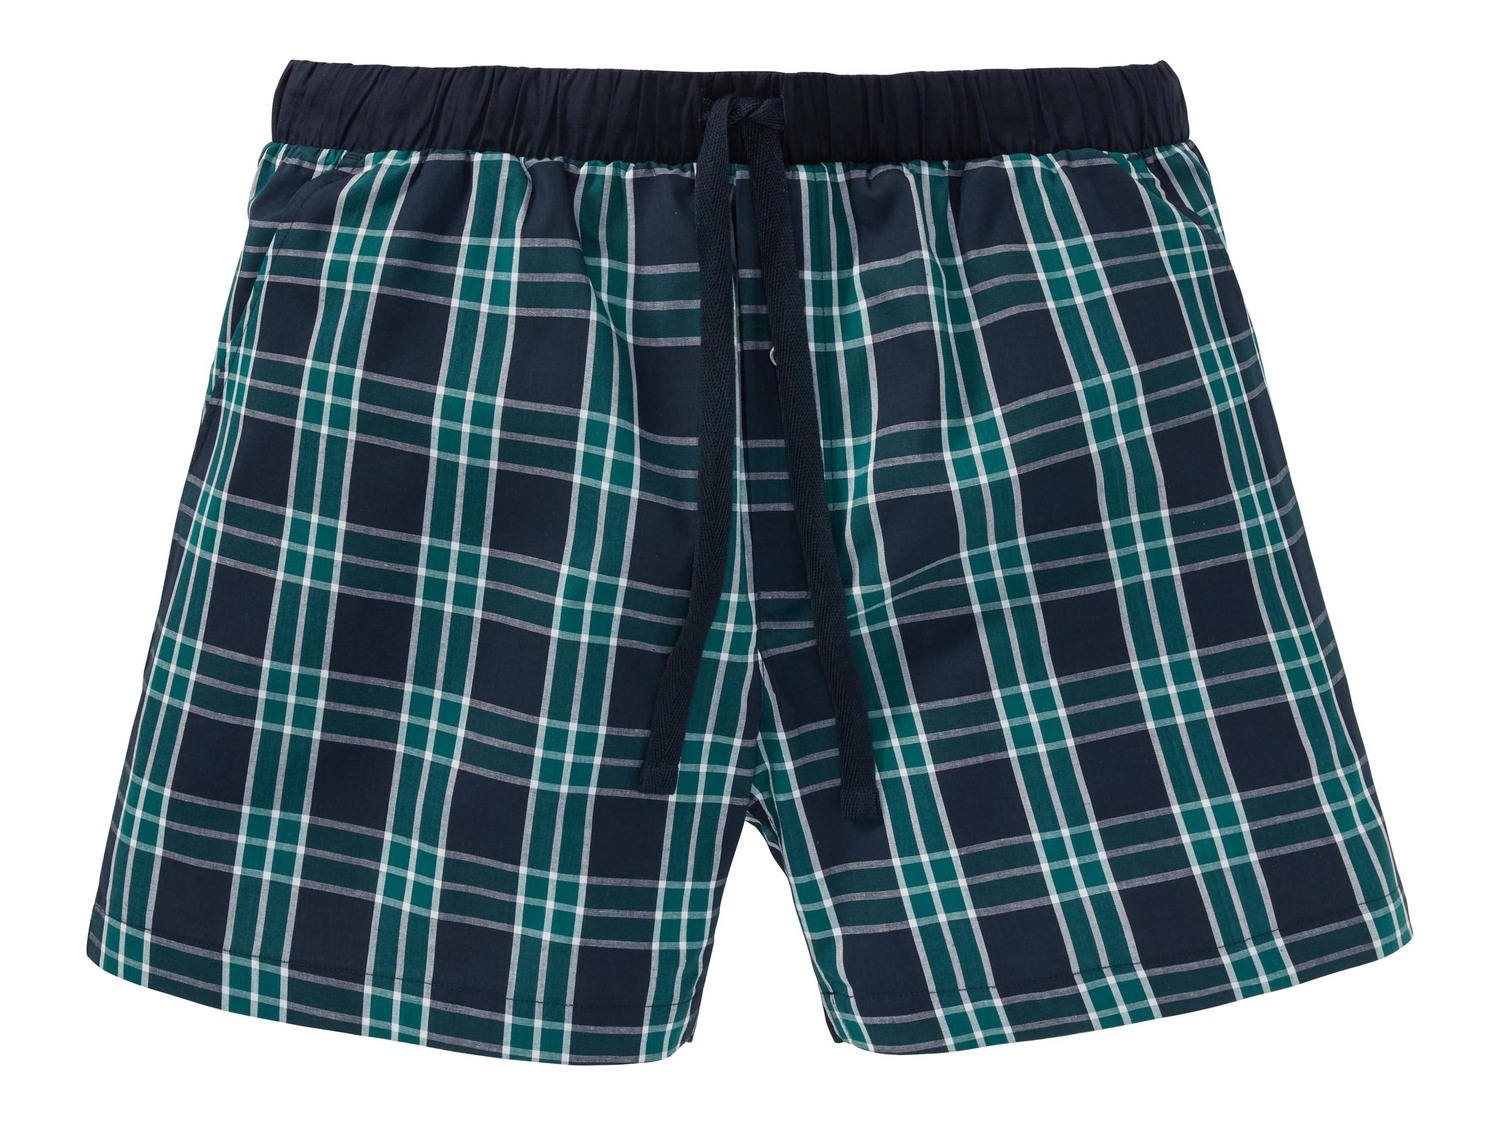 Shorts pigiama da uomo Livergy, prezzo 4.99 &#8364;  
Misure: S-XL
- Oeko tex NEW